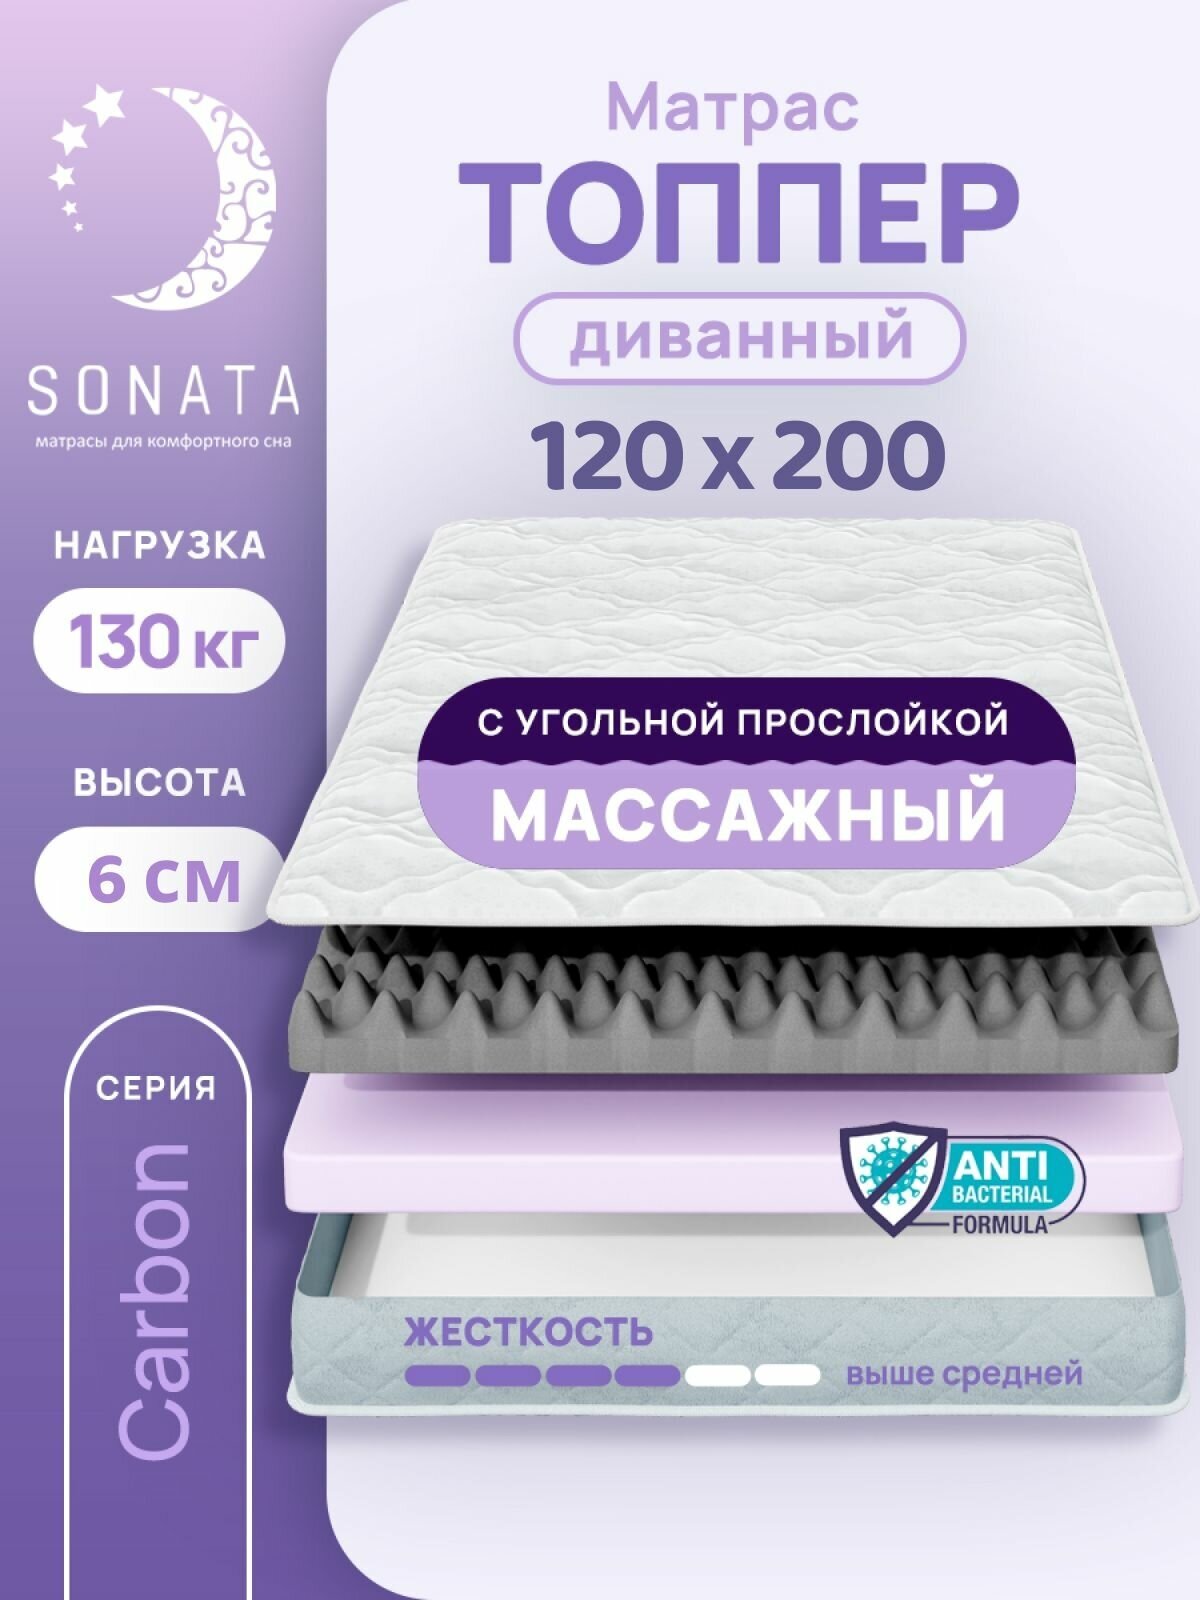 Топпер матрас 120х200 см SONATA, ортопедический, беспружинный, односпальный, тонкий матрац для дивана, кровати, высота 6 см с массажным эффектом